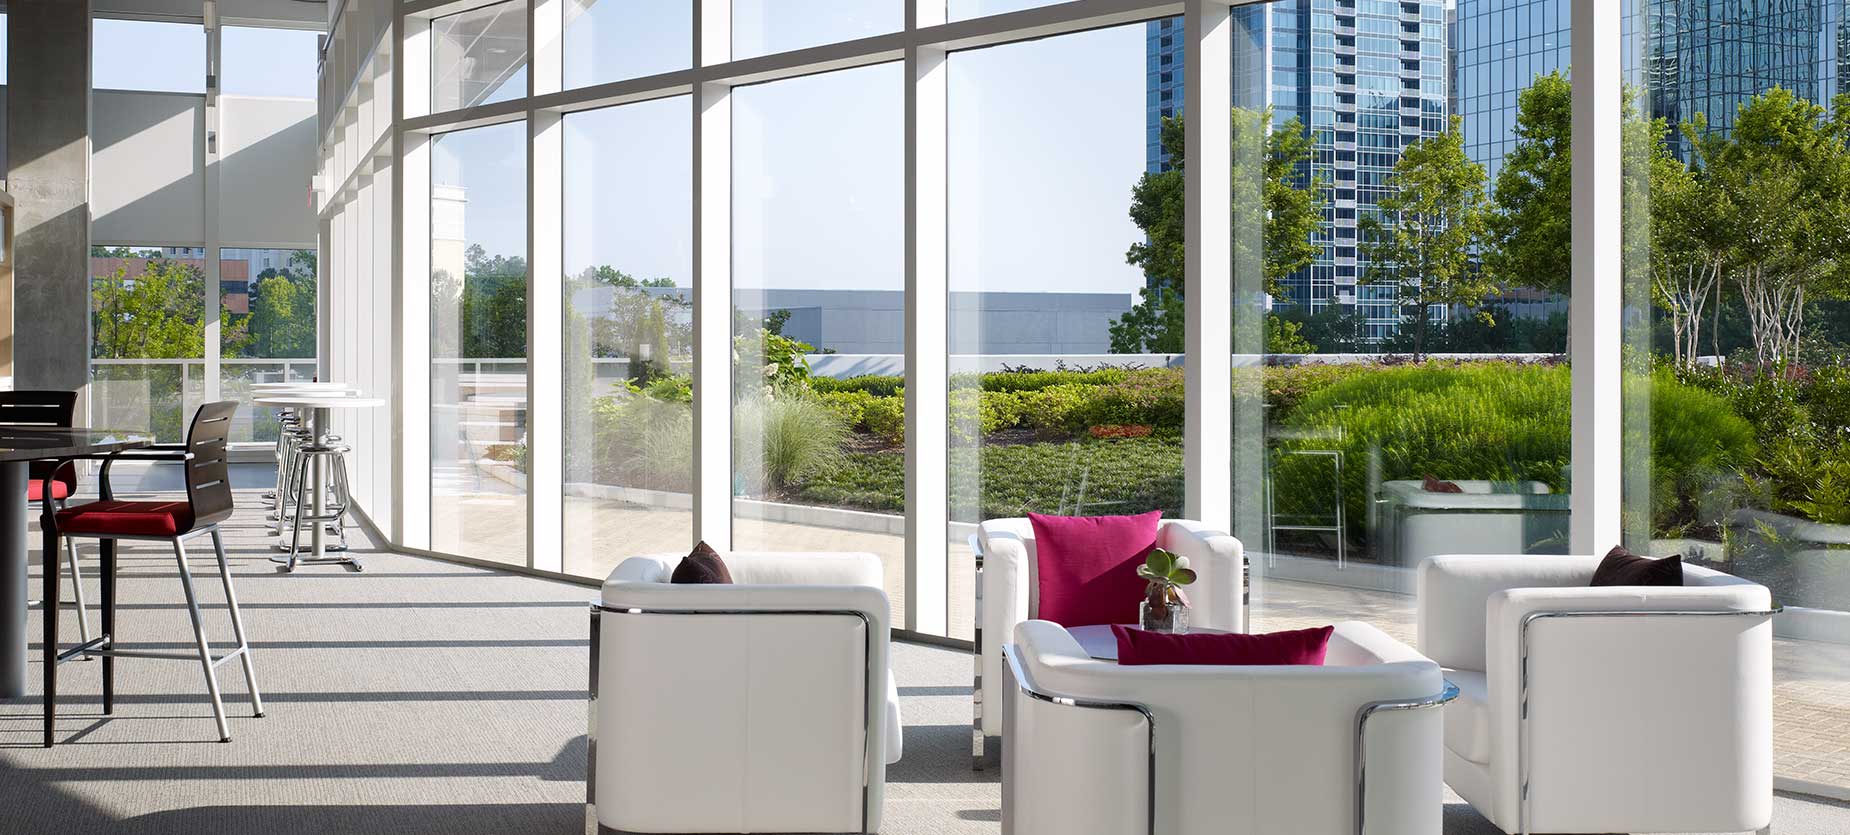 座り心地の良い椅子類をあちらこちらに配置したこのソーシャルスペースは、交流とコラボレーションを促します。アトランタのスカイラインの眺めと屋外のガーデンが雰囲気作りに役立っています。